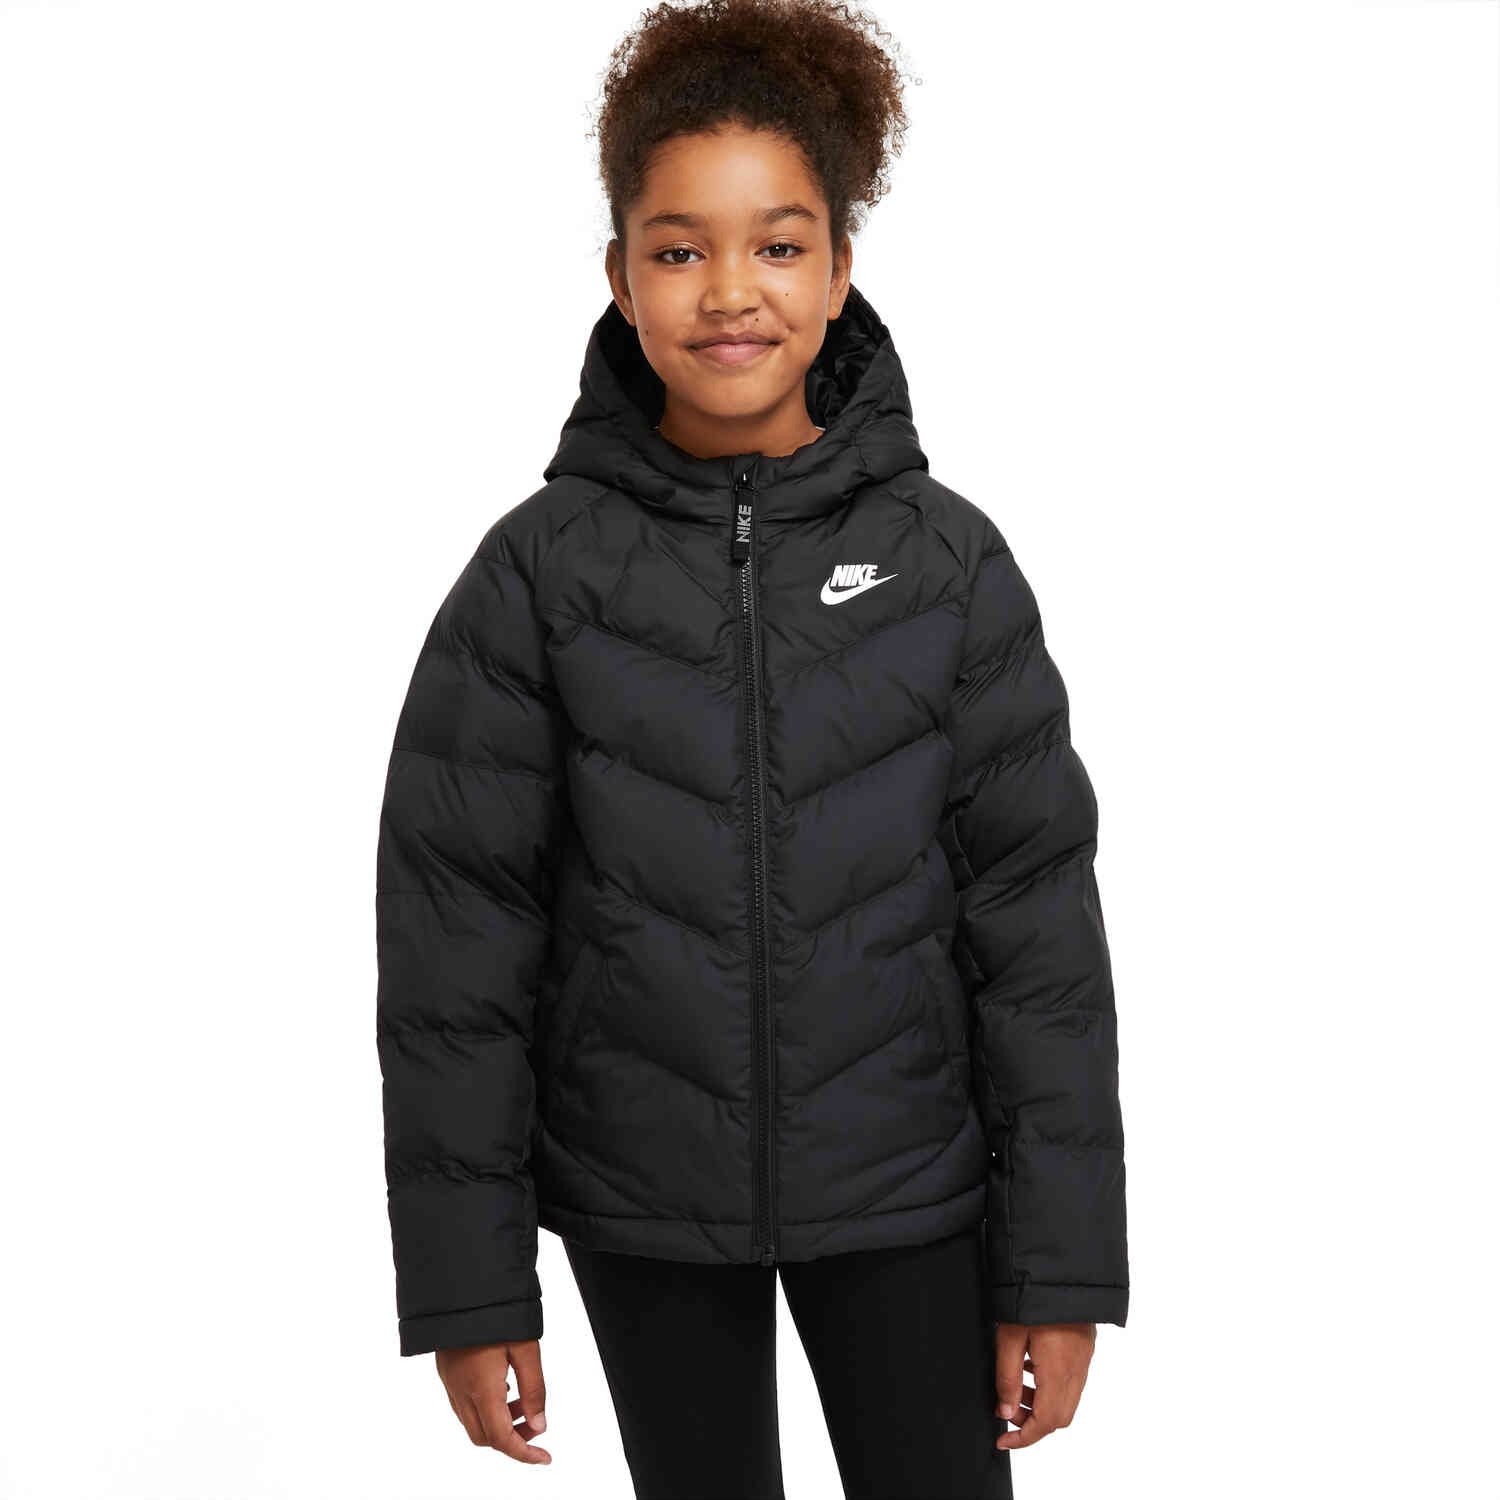 brandwond reinigen Soedan Kids Nike Sportswear Synthetic Fill Jacket - Black/Black/Black/White -  SoccerPro